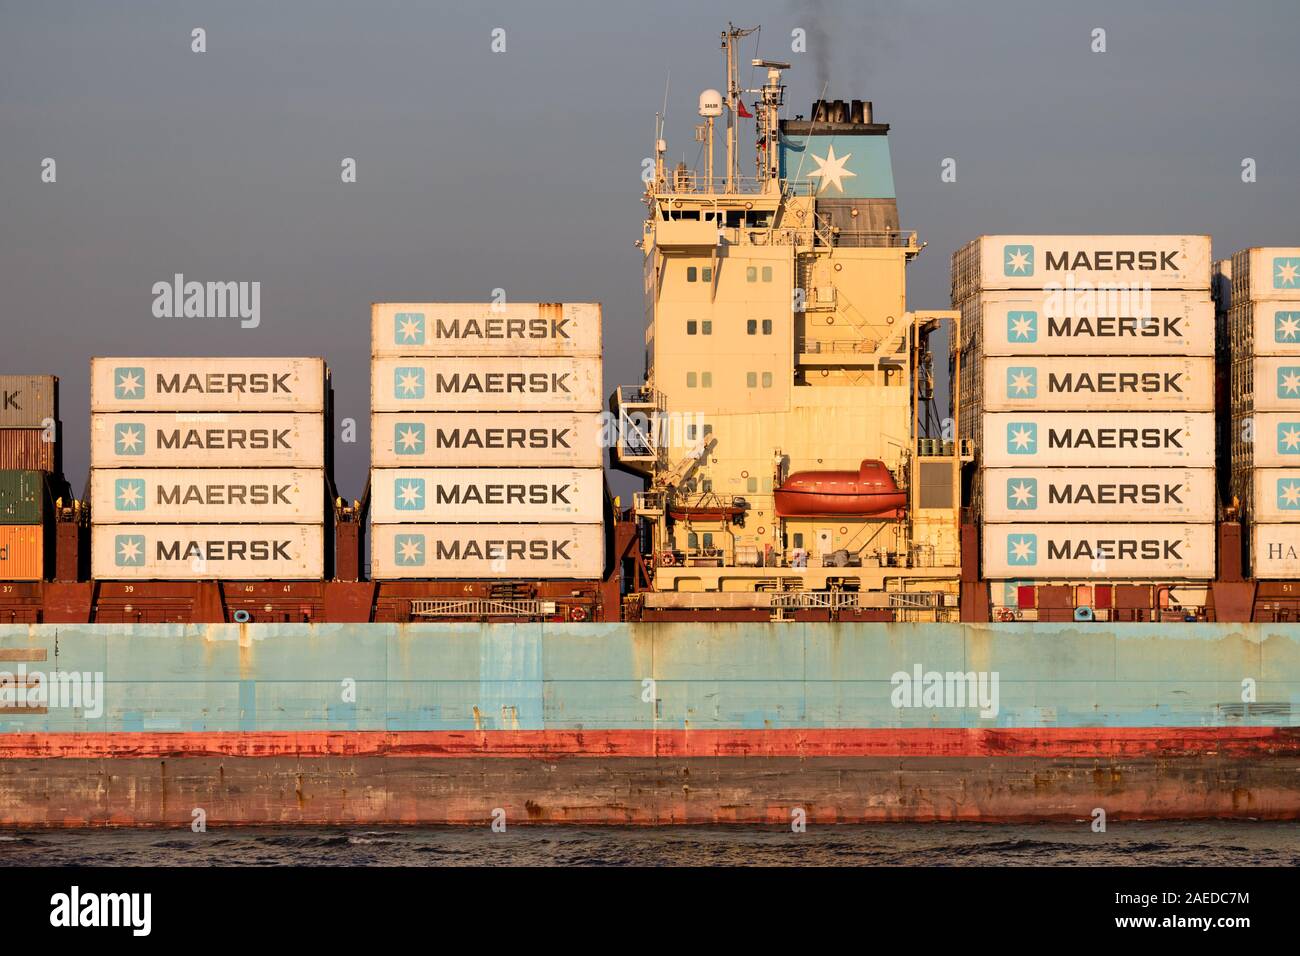 LUNA MAERSK sur l'Elbe. Maersk est le plus grand exploitant de navires à conteneurs dans le monde. Banque D'Images